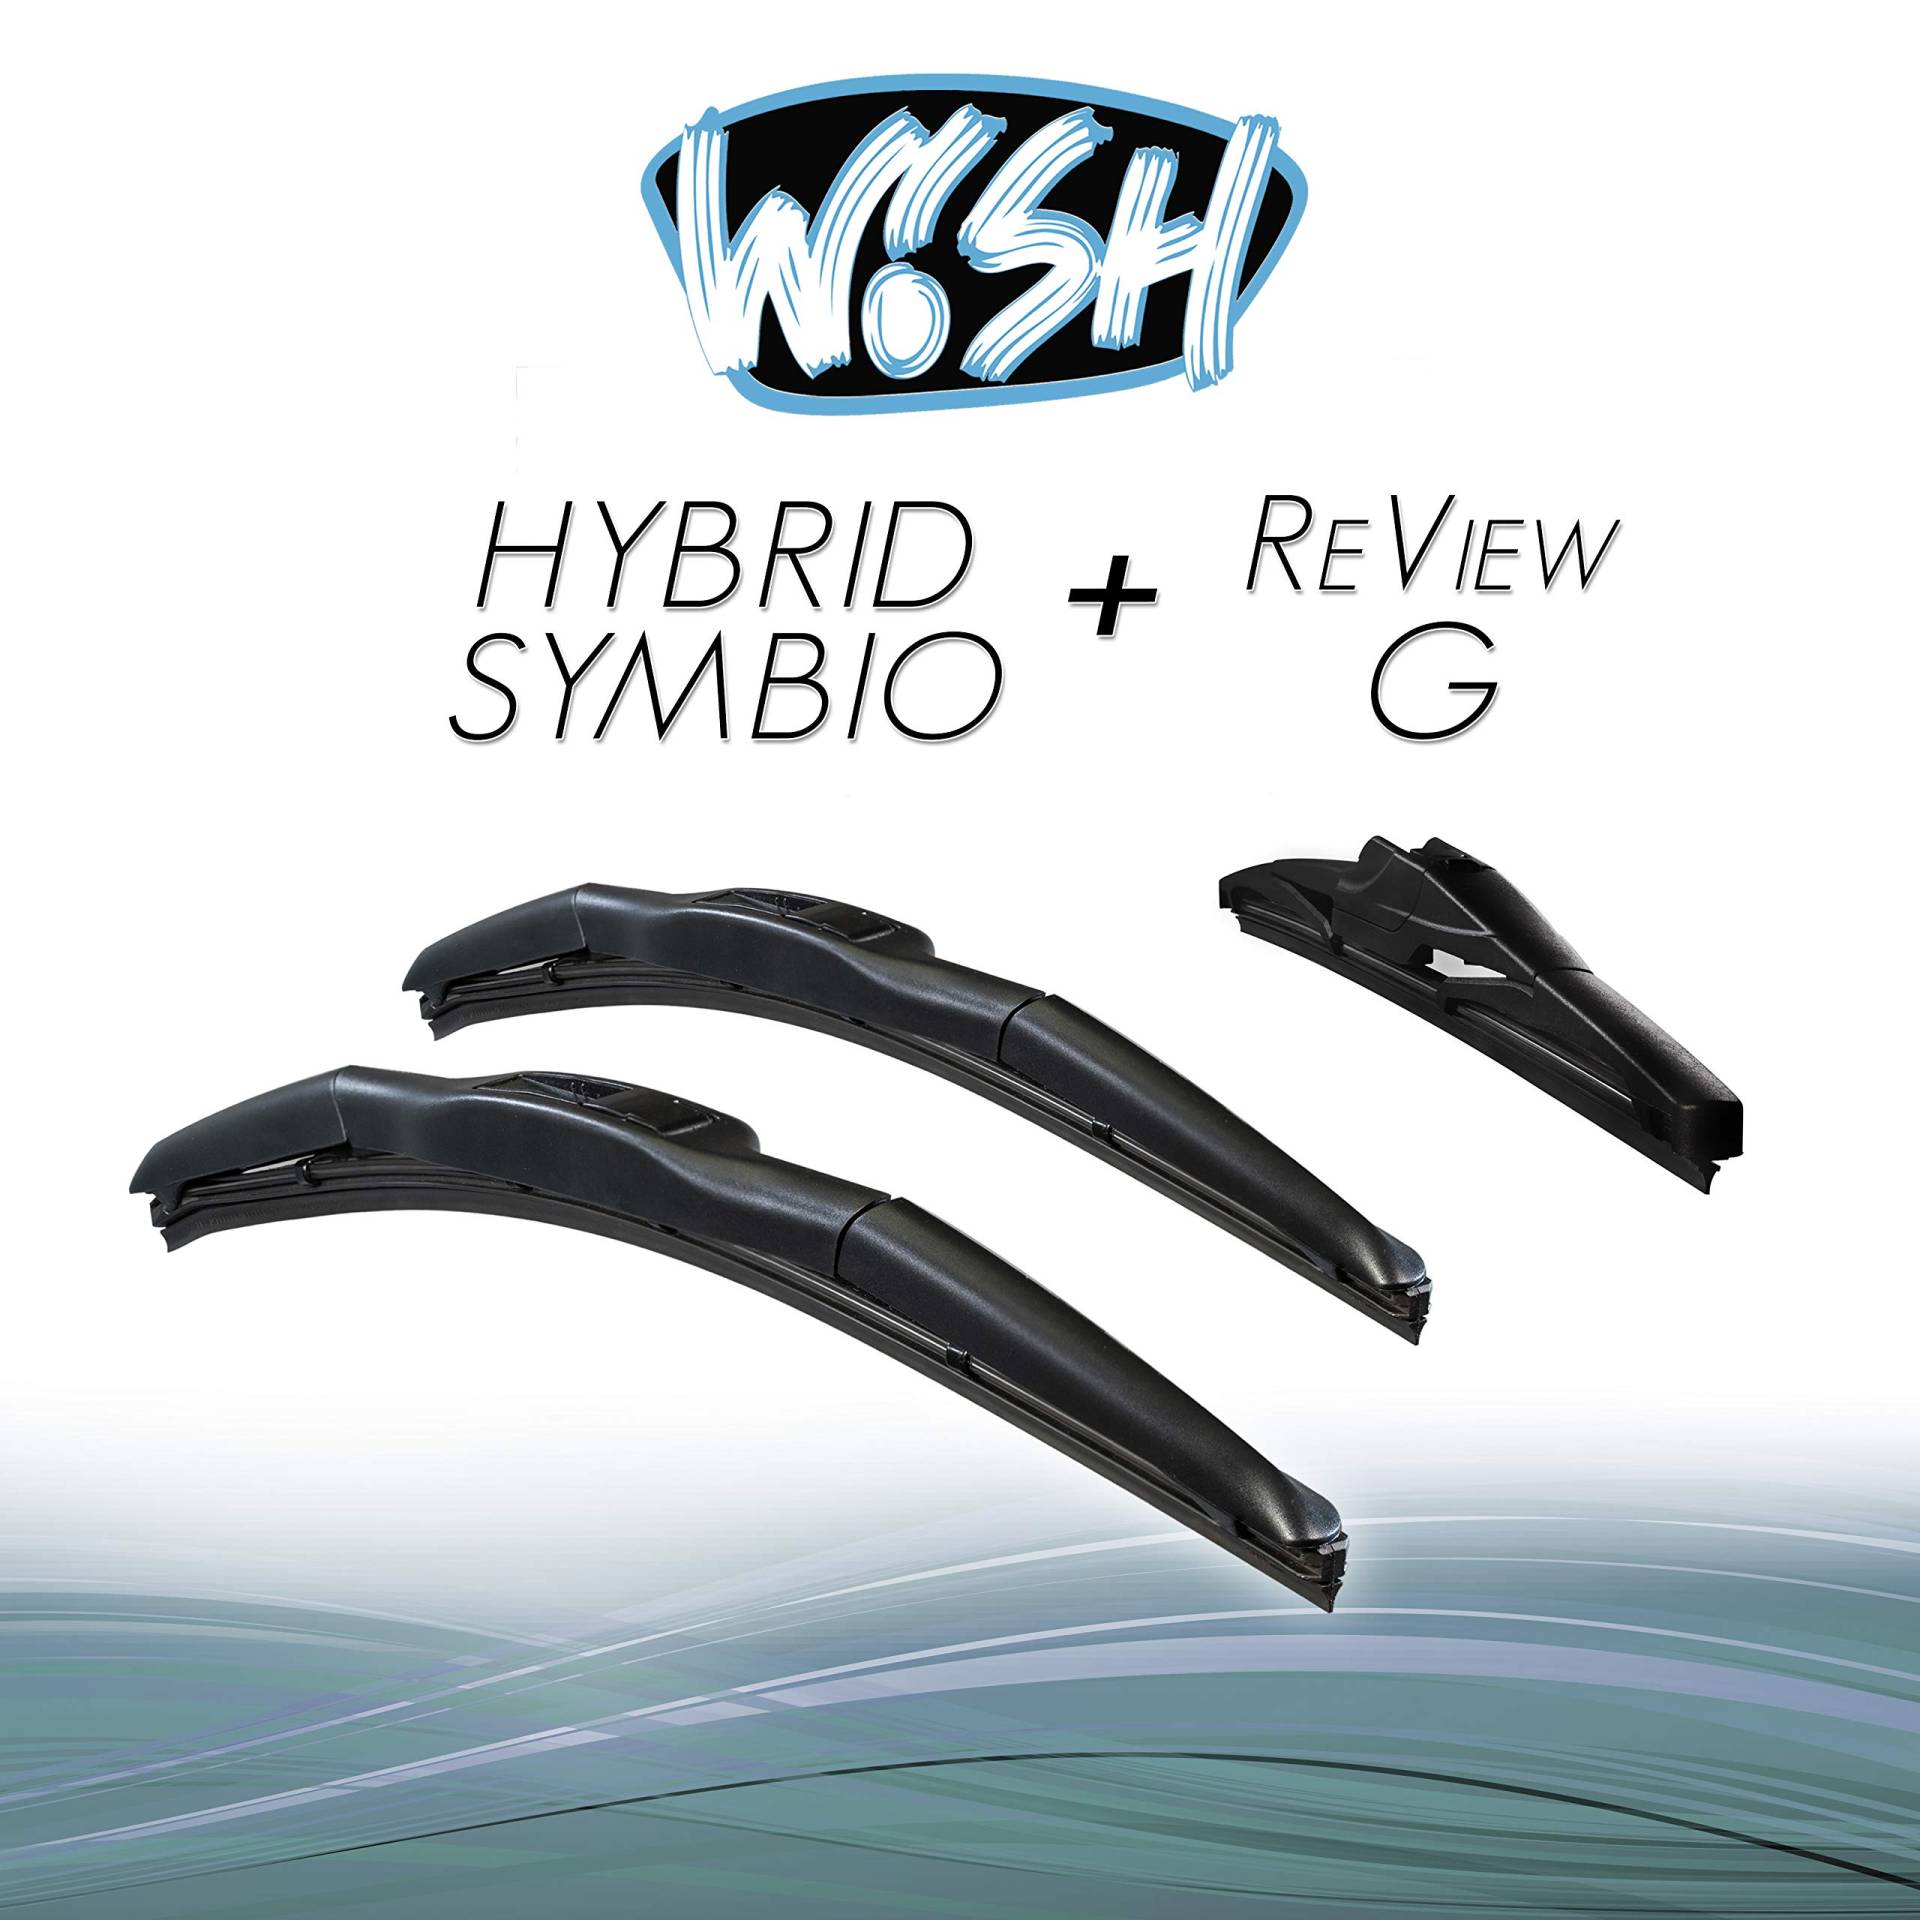 Wish® Hybrid Symbio Satz Front + Heck Scheibenwischer Länge: 14" 350mm / 14" 350mm / 12" 300mm Wischblätter Vorne und Hinten Hybrid-Scheibenwischer + Review G HS14.14.12RG von Wish